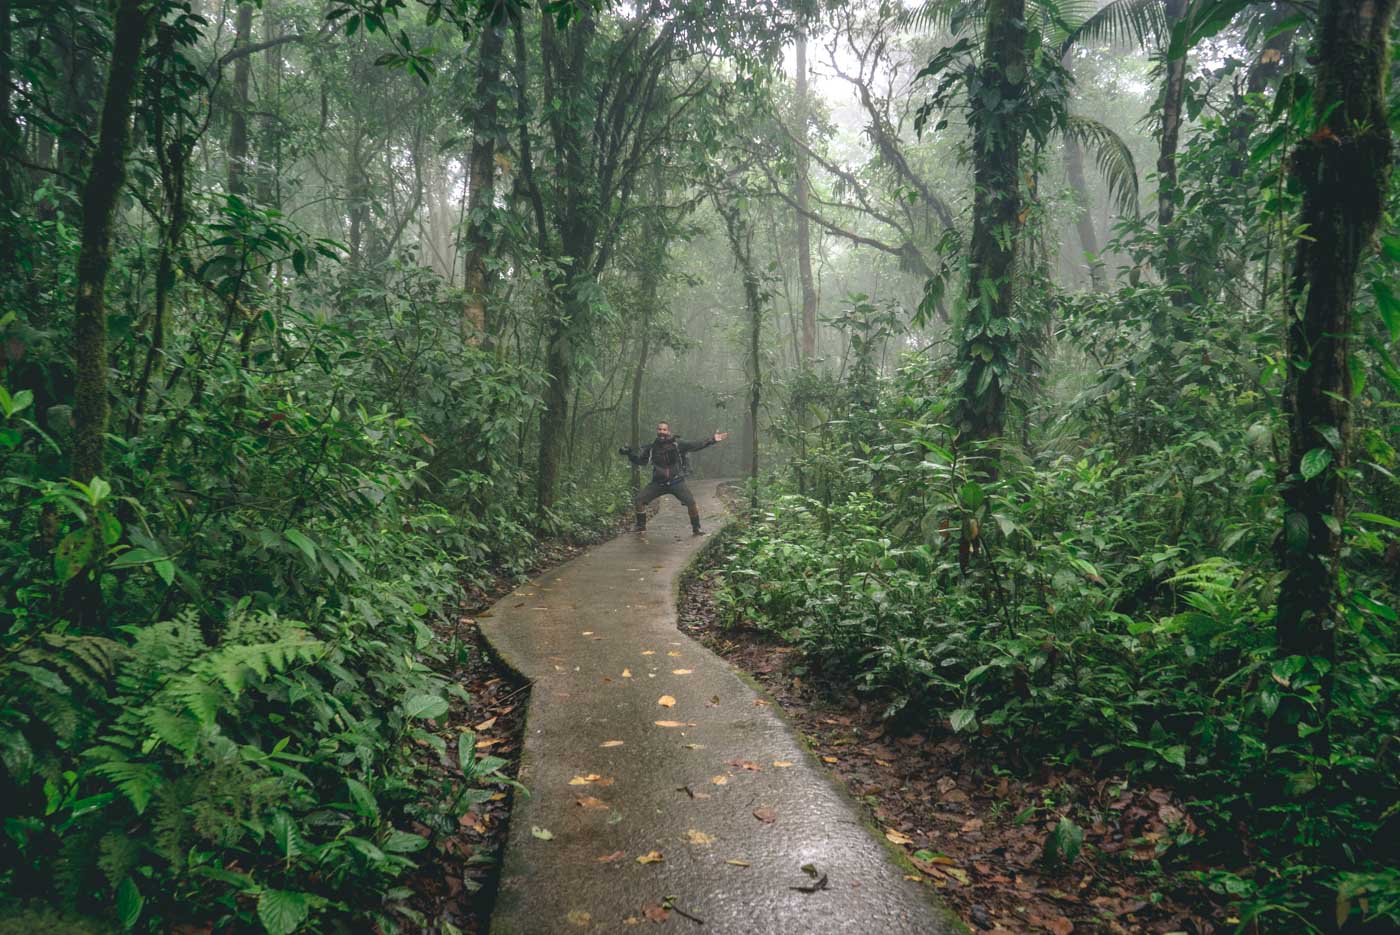 Rainy day in Tonerio National Park